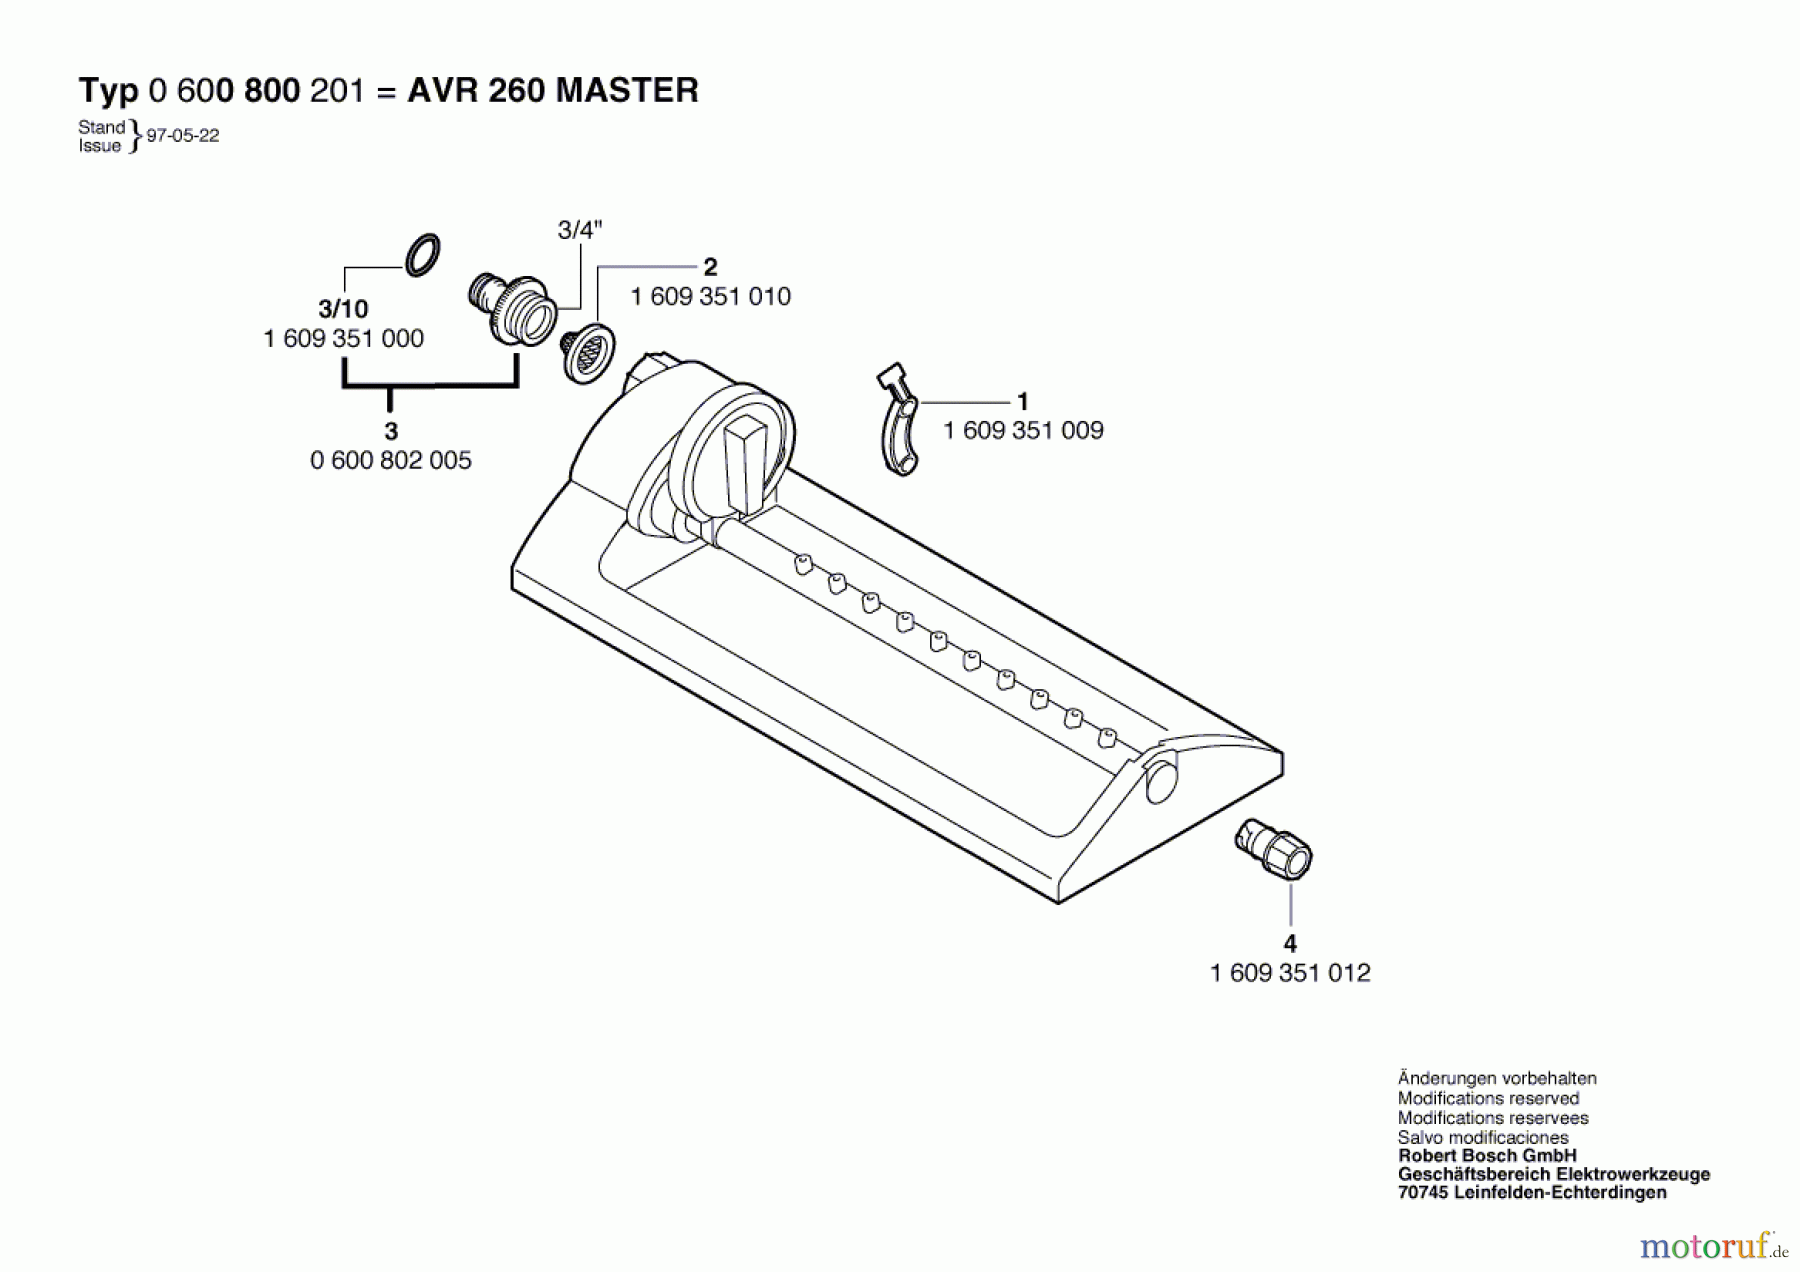  Bosch Wassertechnik Viereckregner AVR 260 MASTER Seite 1